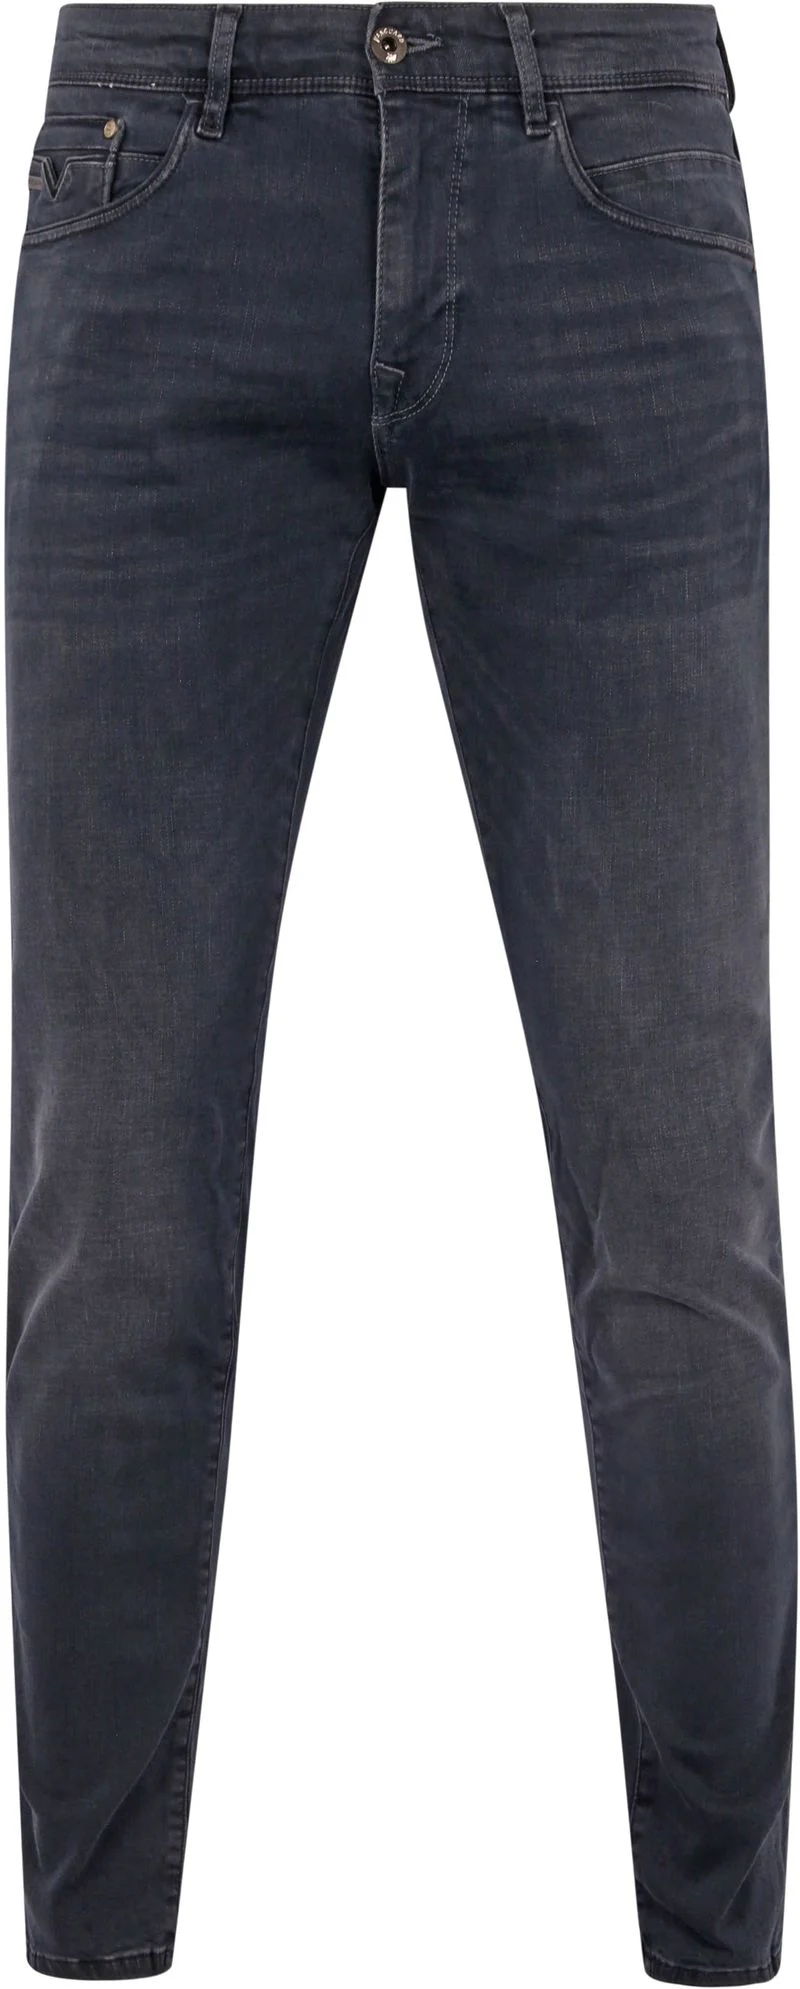 Vanguard Jeans V12 Rider Anthrazit ODB - Größe W 30 - L 32 günstig online kaufen